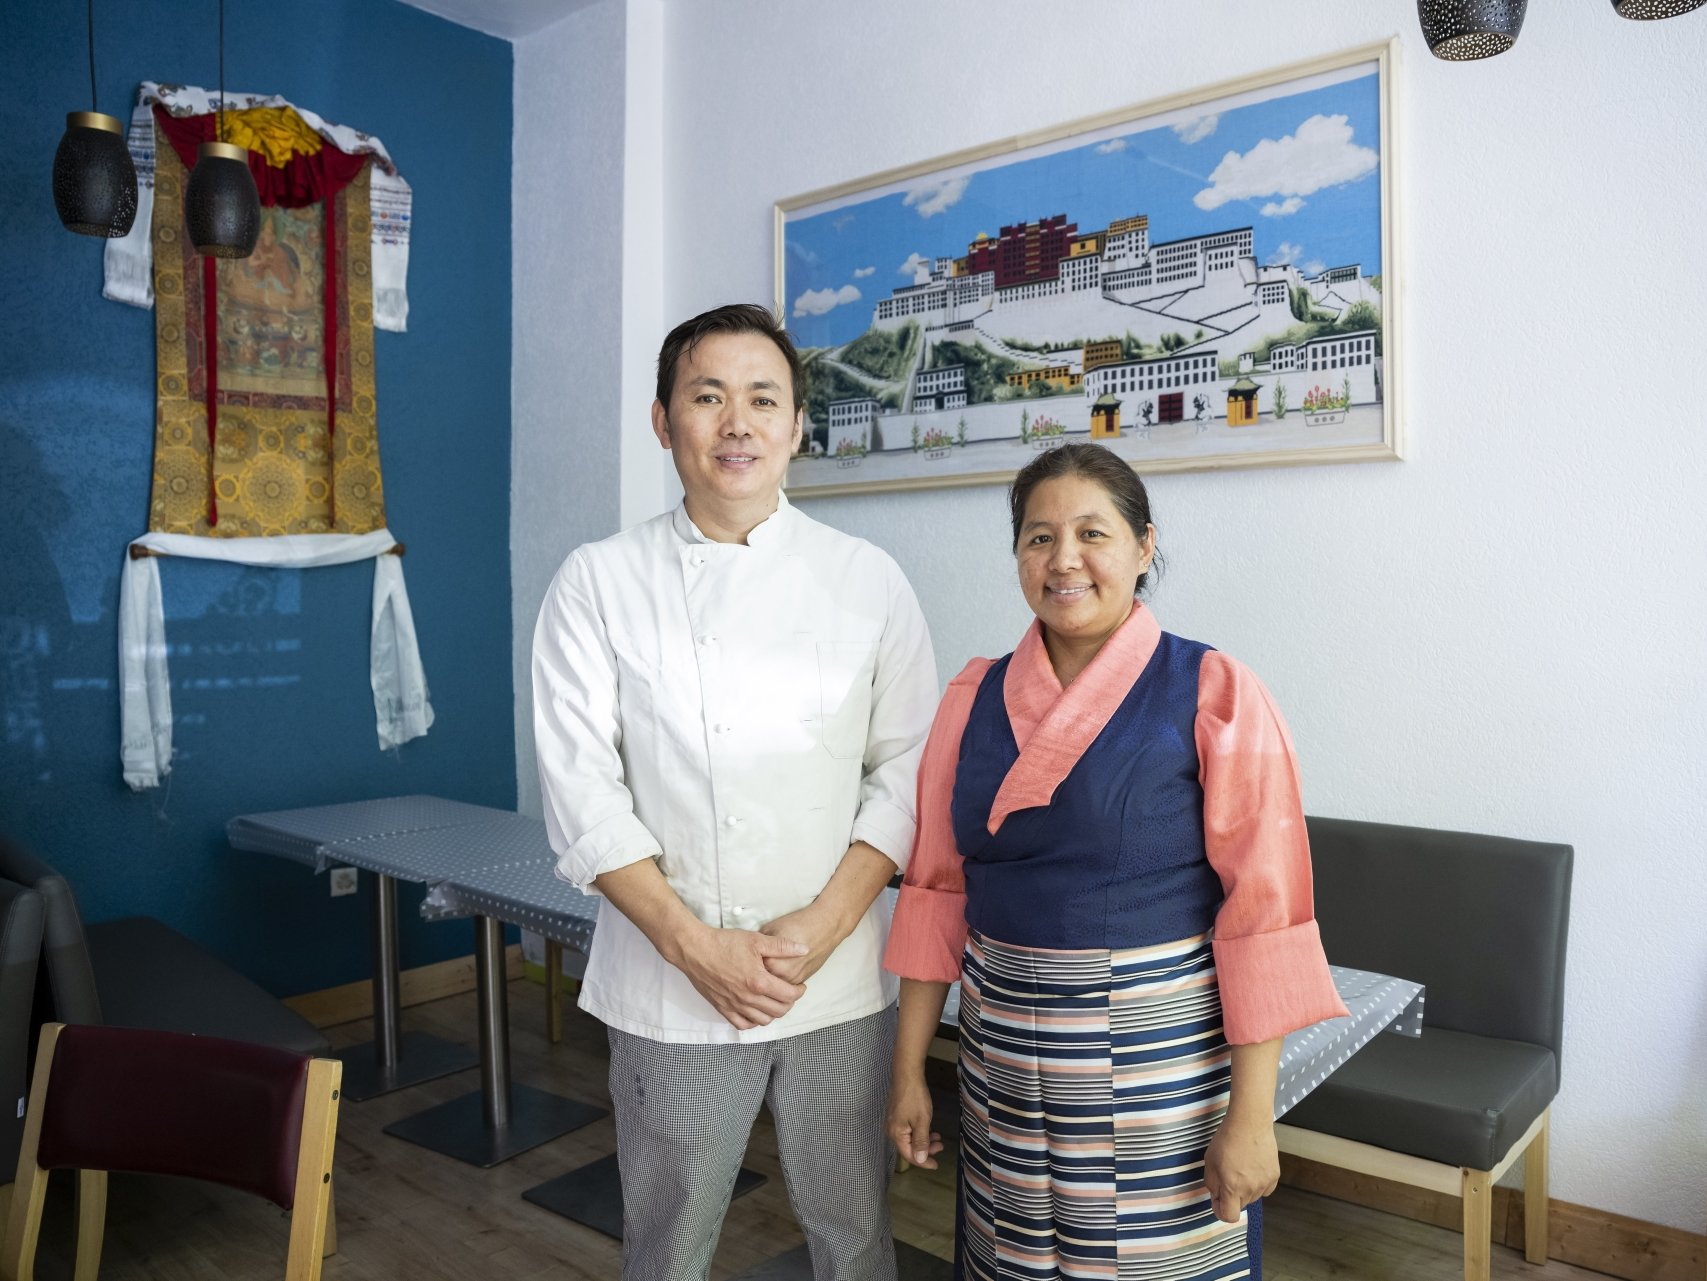 Yonten et Dawa Tratsang - elle porte le costume traditionnel - posent dans la petite salle de leur restaurant. Derrière eux, une broderie représentant Lhassa, capitale du Tibet.